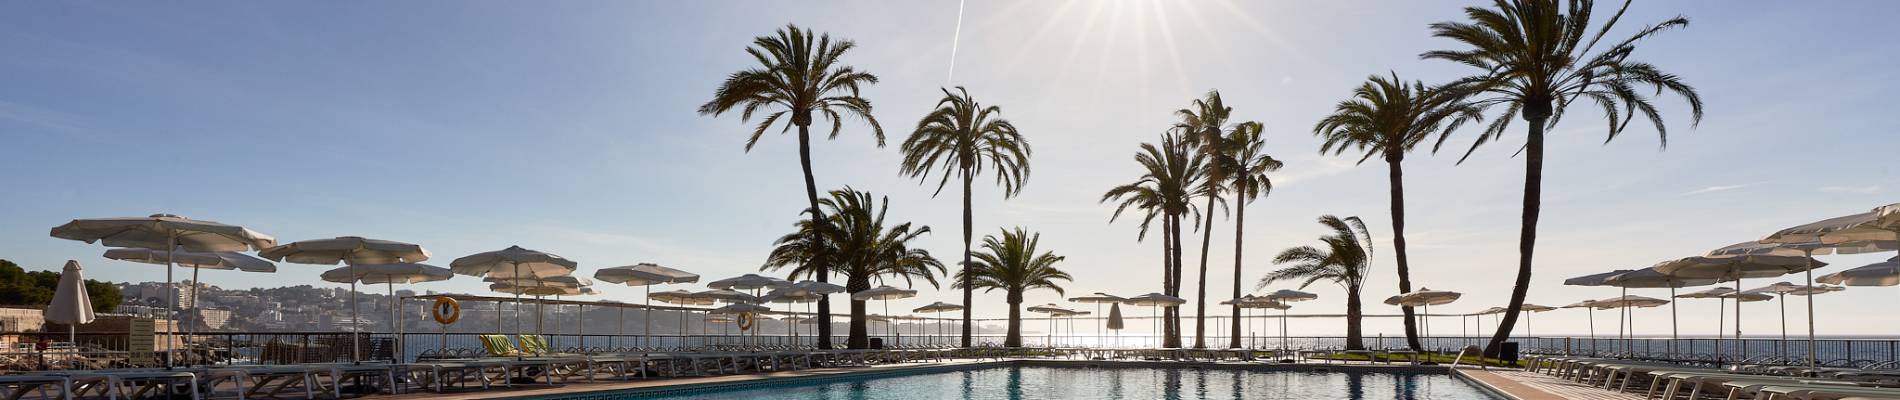 Hotel-Bonanza-Playa-Mallorca-Outdoor-Pool-1